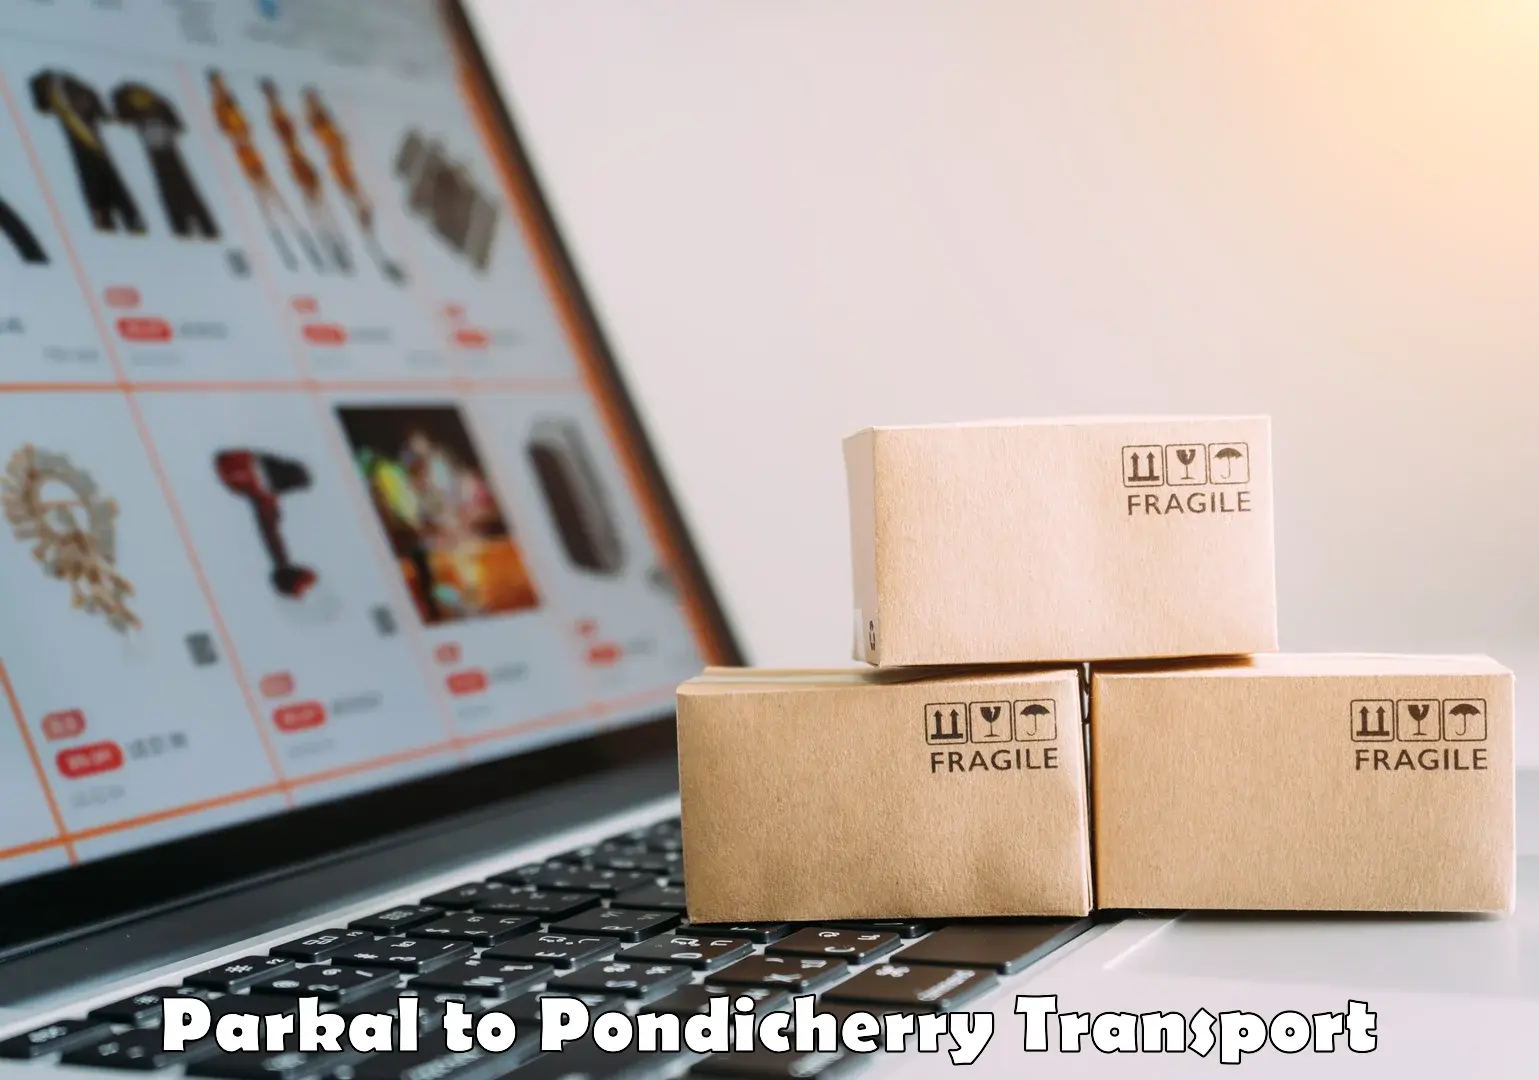 Lorry transport service Parkal to Pondicherry University